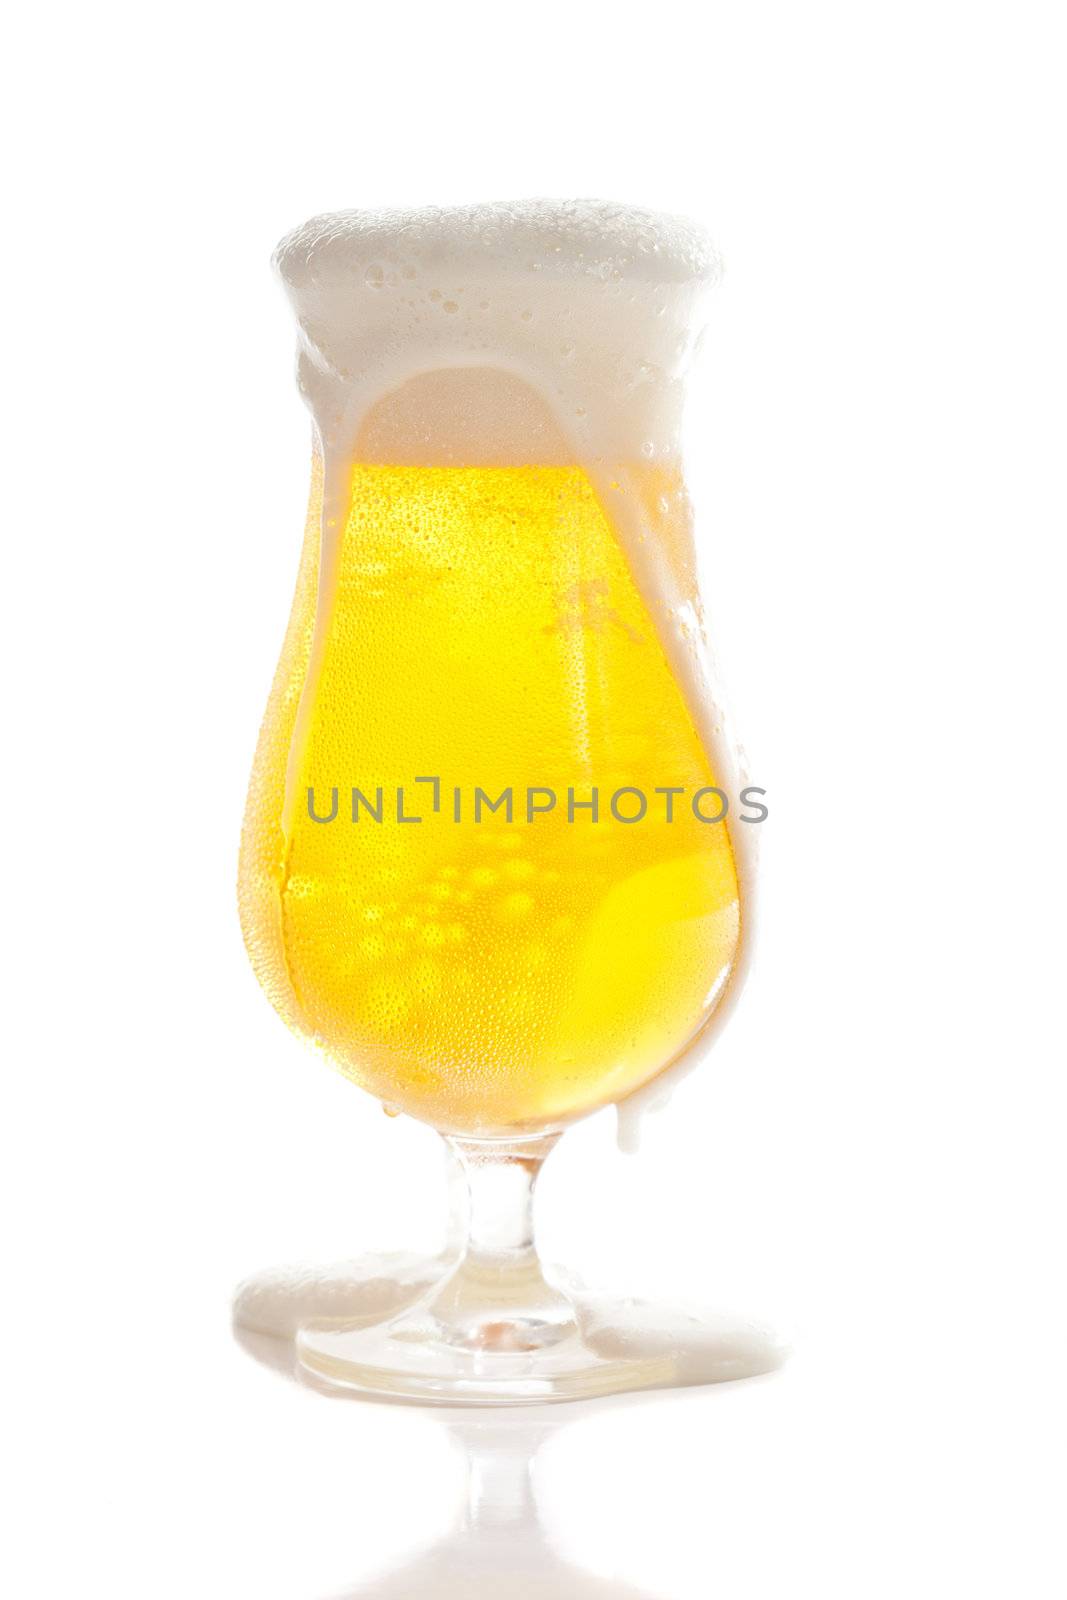 Cool beer by Fotosmurf